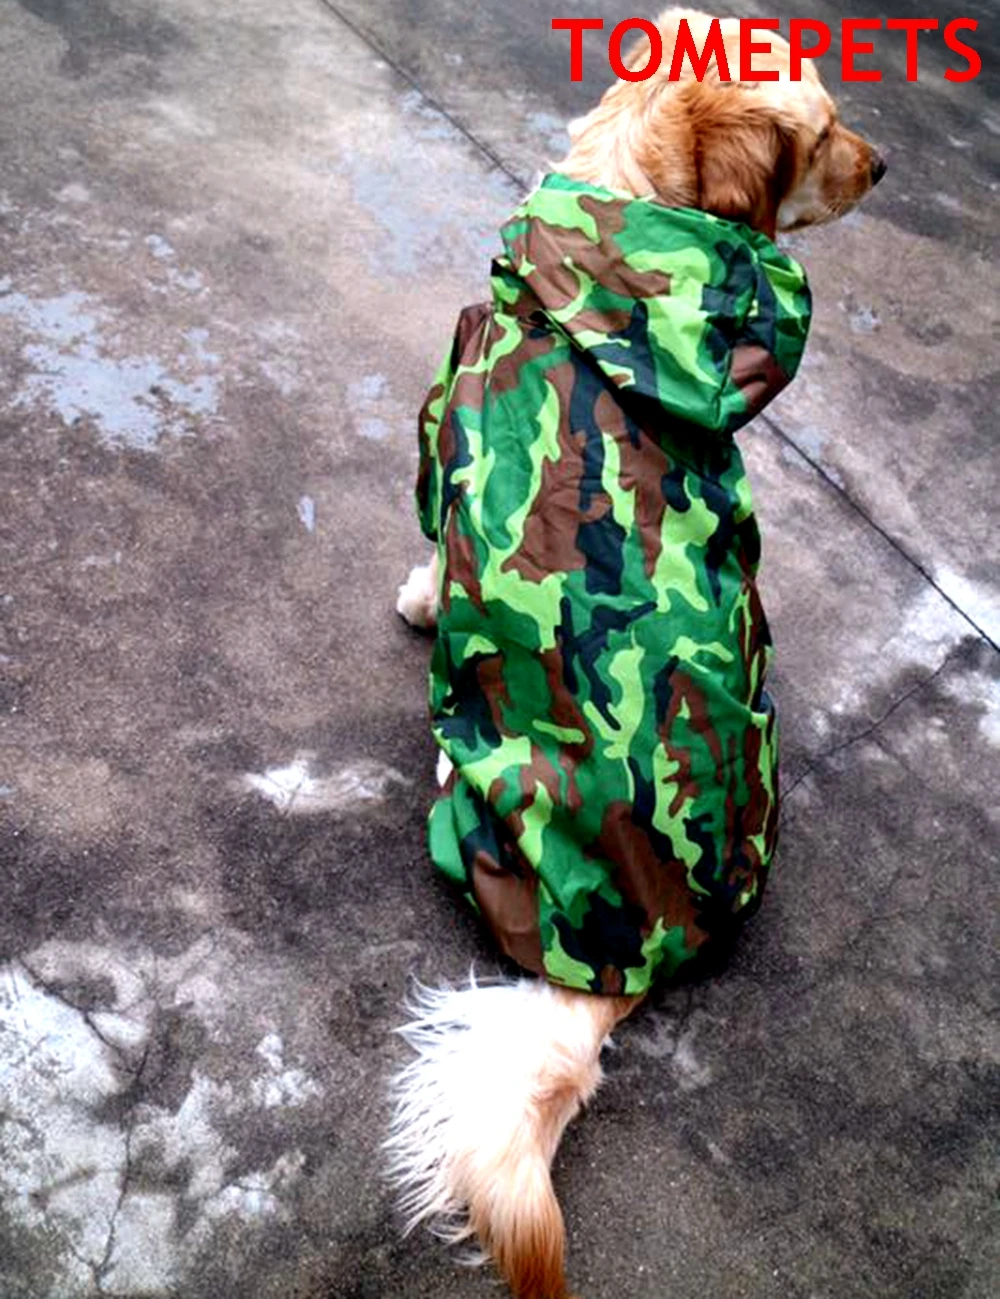 TOMEPETS camouflage super stor Hund regnjakke letvægts vandtæt fire-ærme poncho golden-retriever regn jakke regntøj